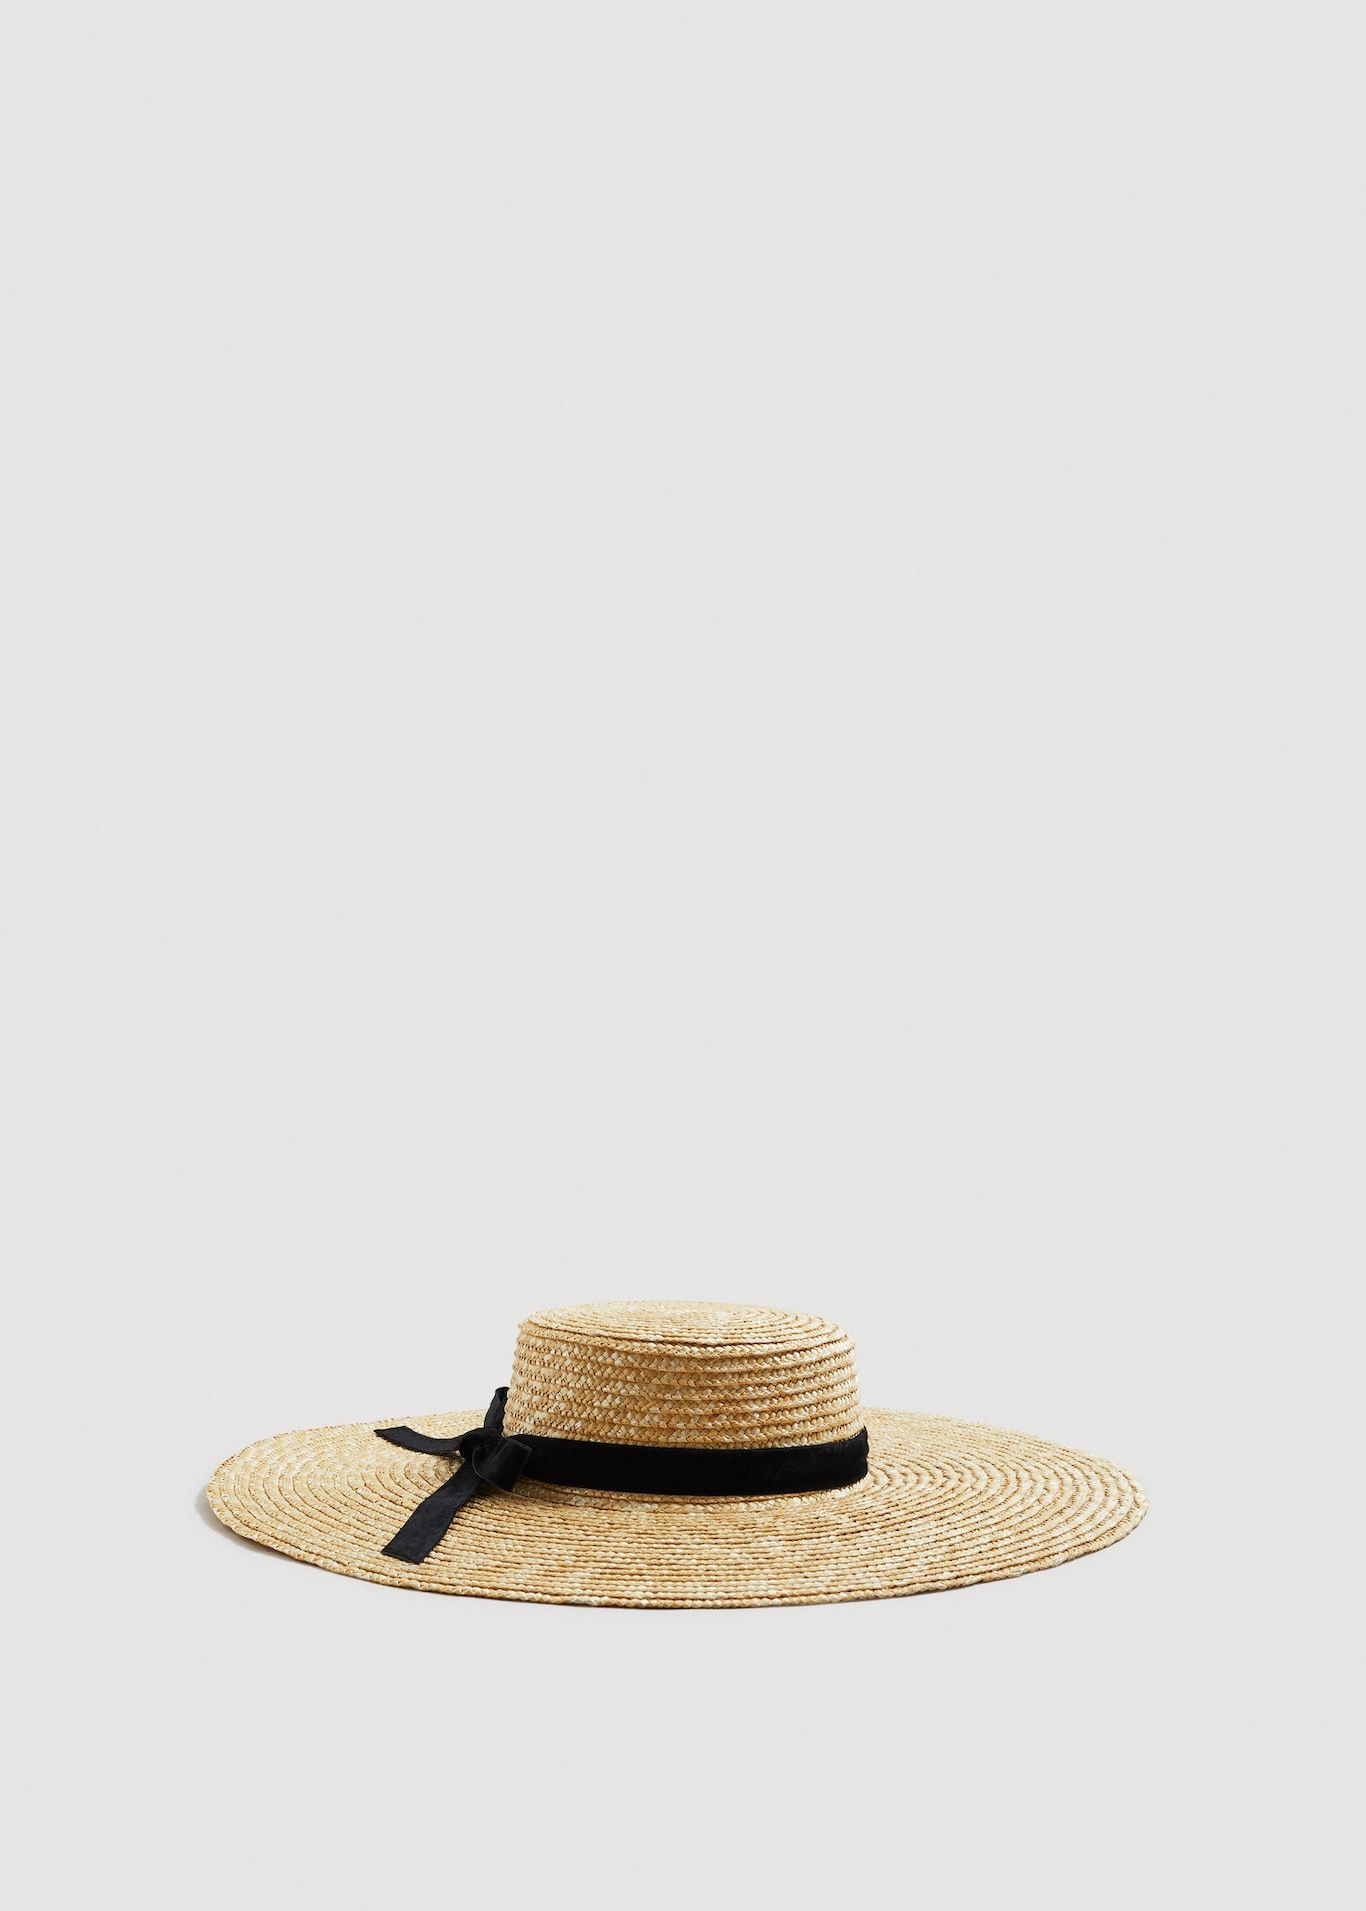 Sombrero de paja, de Mango (5,99 euros).